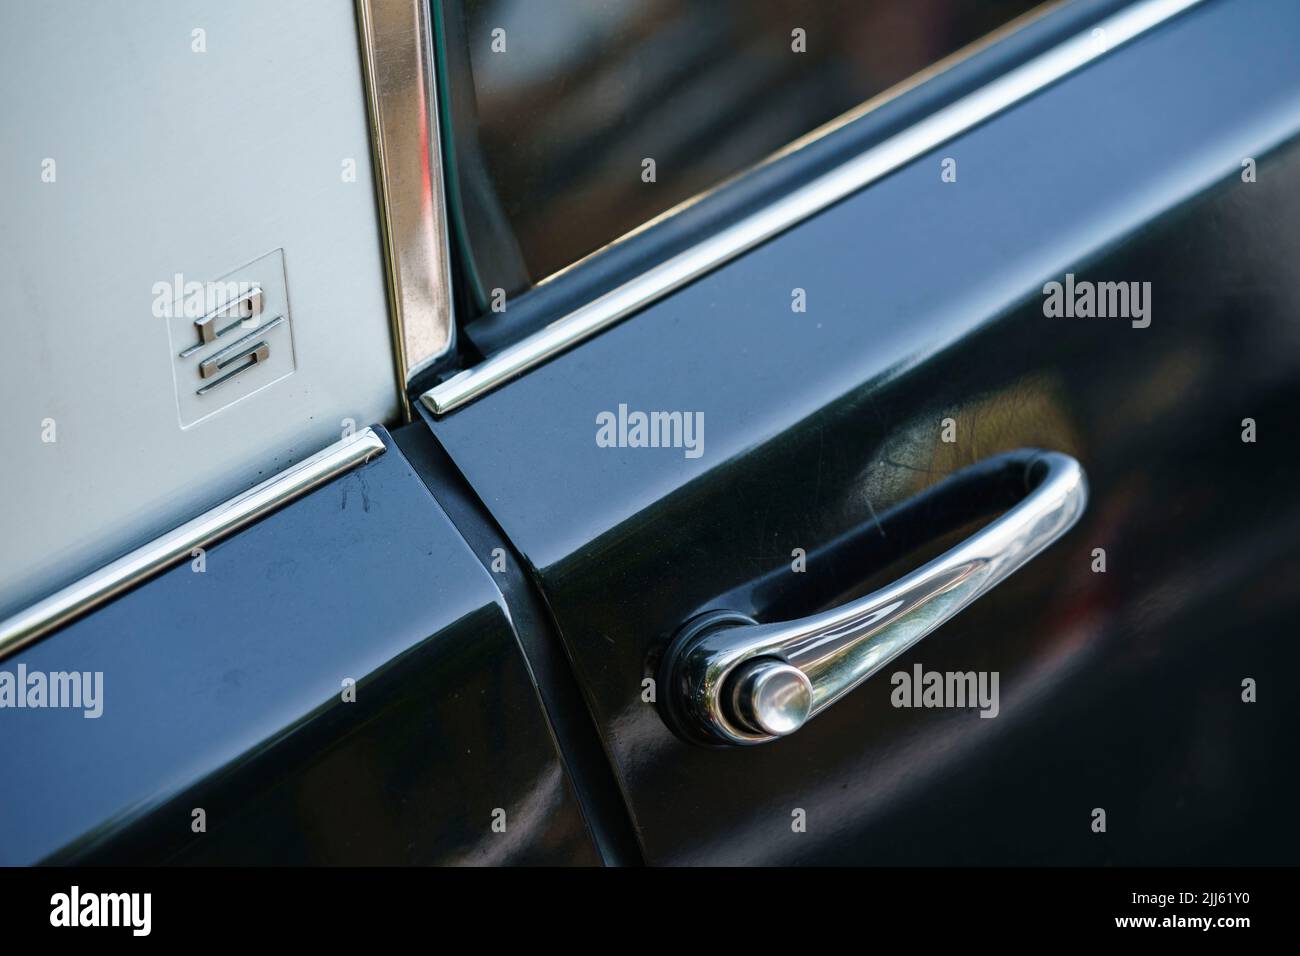 Détail de la poignée de porte d'une voiture classique Citroën DS du fabricant français Citroën Banque D'Images